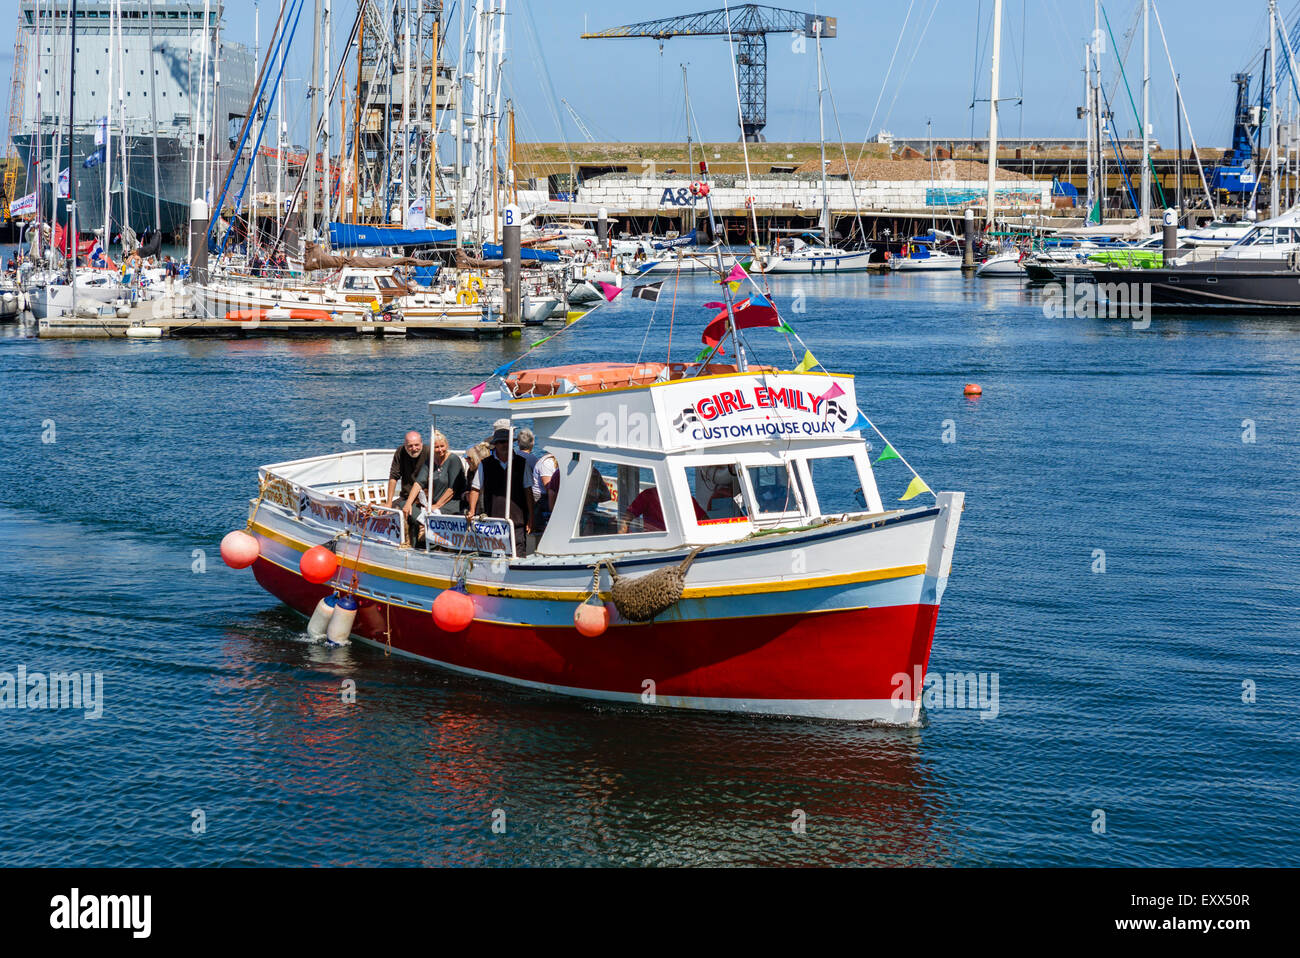 Voyage en bateau de retour au port, Custom House Quay, Falmouth, Cornwall, England, UK Banque D'Images